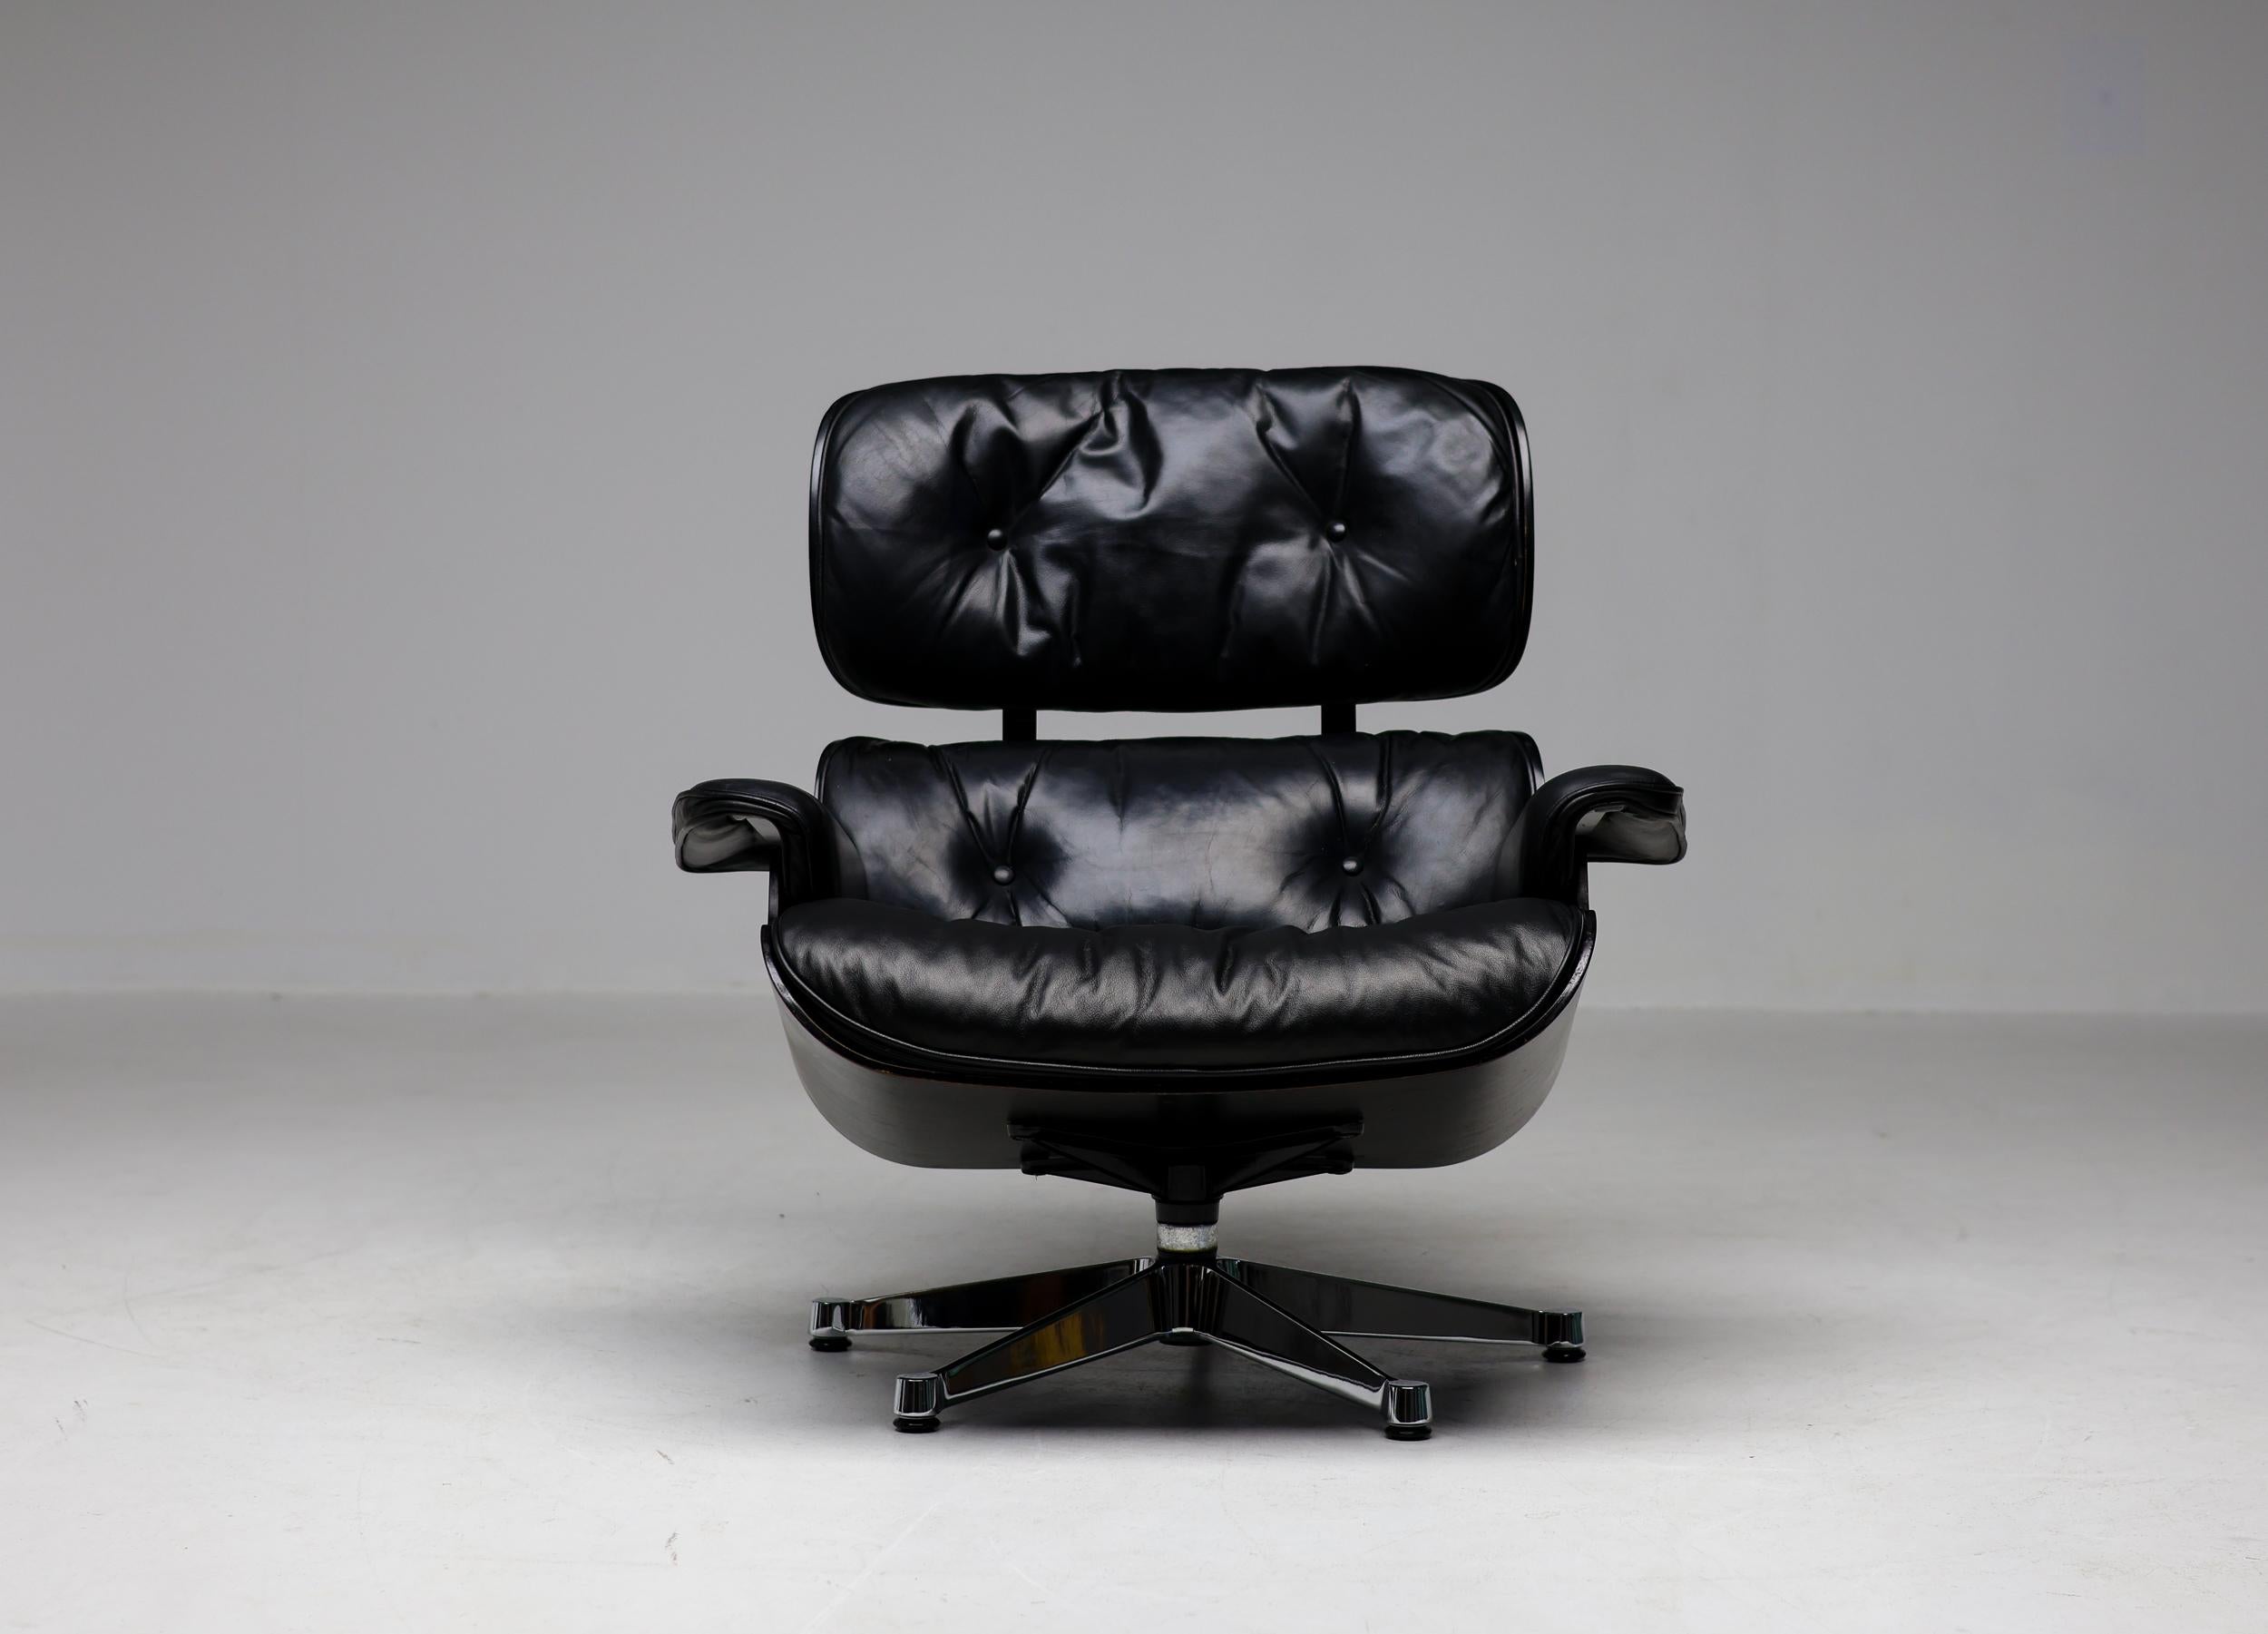 Lounge Chair, entworfen von Charles und Ray Eames für Herman Miller, mit schwarz lackierten Sperrholzschalen und schwarzer Lederpolsterung. Dieses Exemplar mit verchromtem Aluminiumsockel und Beschlägen wurde 1979 speziell für den europäischen Markt